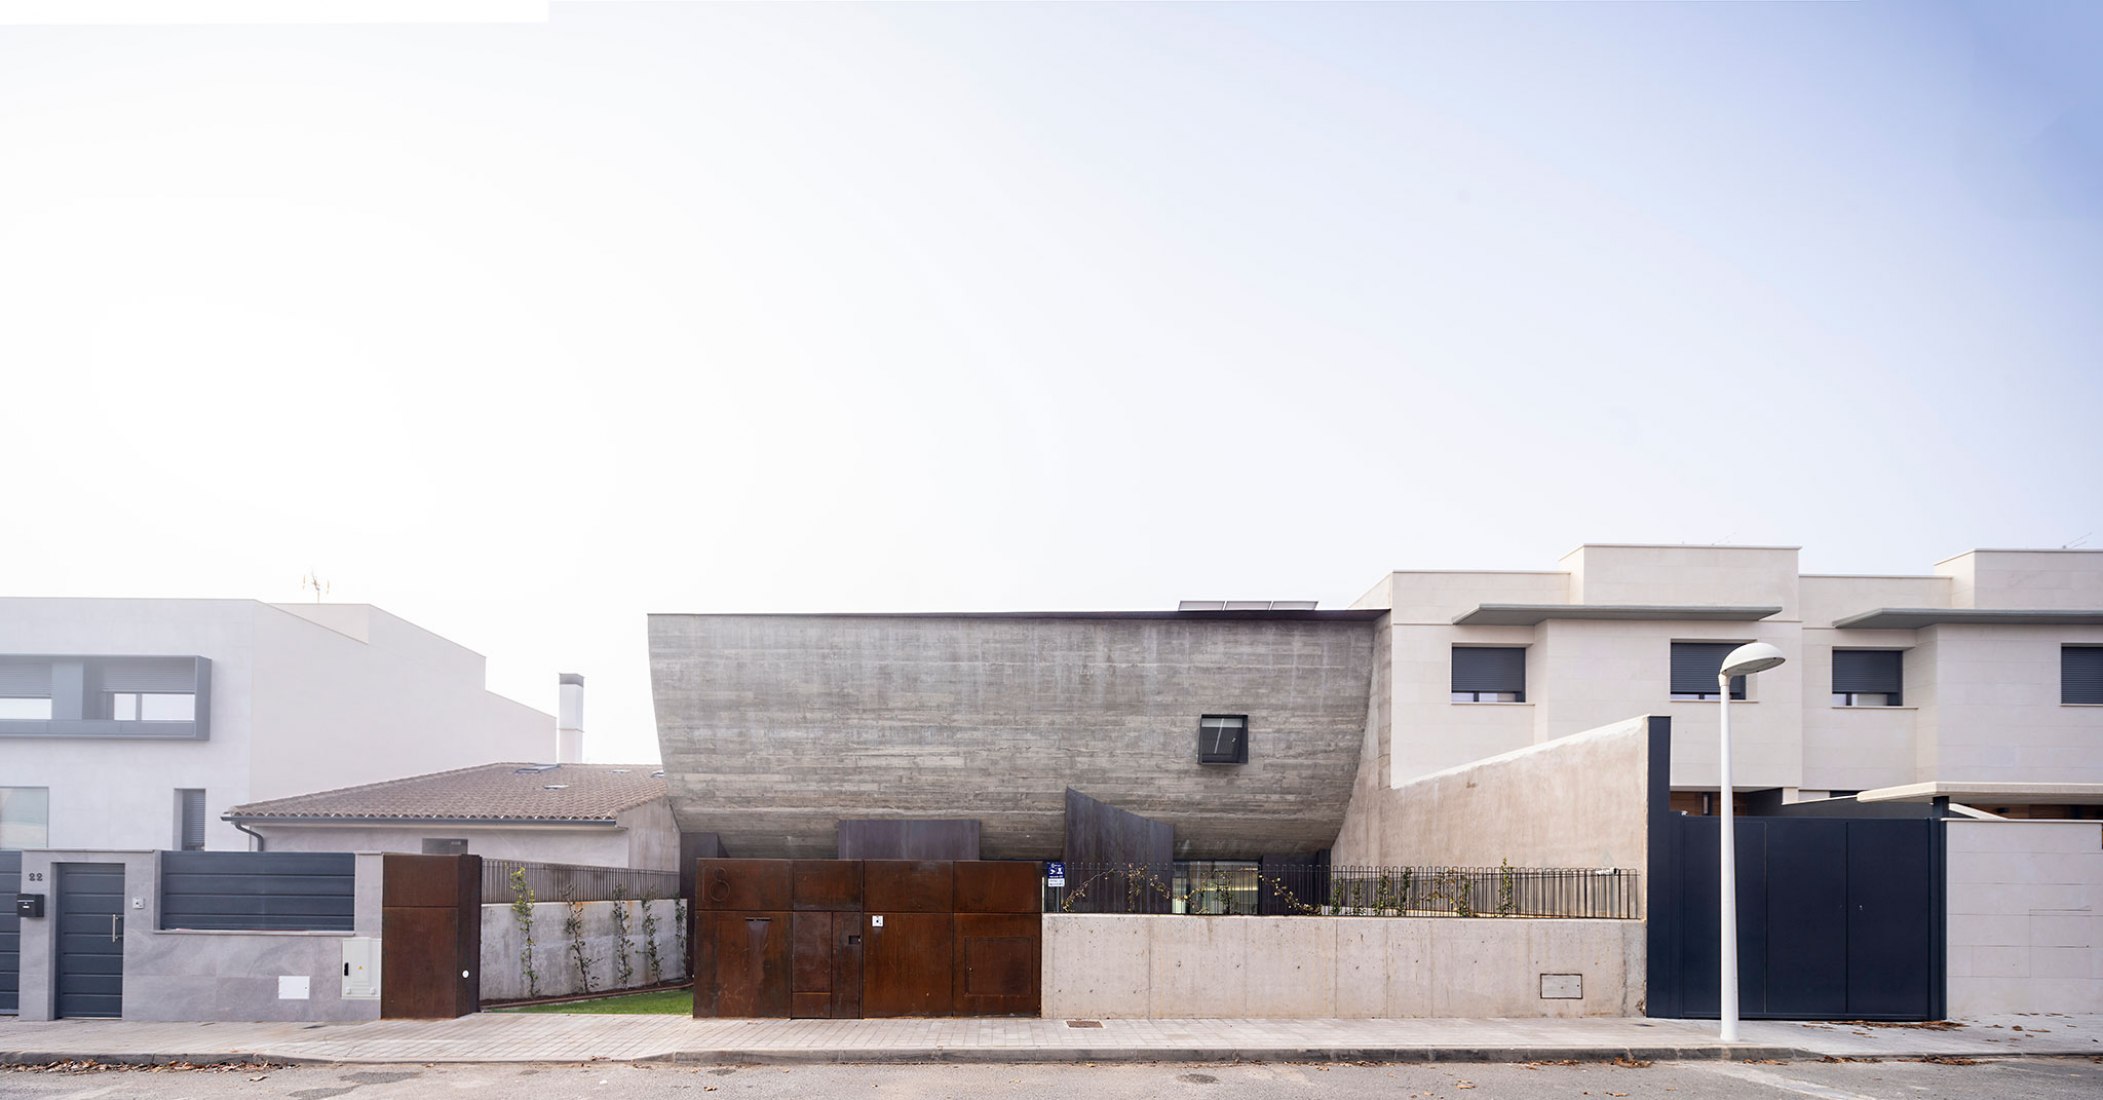 Renovación del concepto «casas adosadas». Casa NAU por MUKA arquitectura. Fotografía por Javier Callejas.